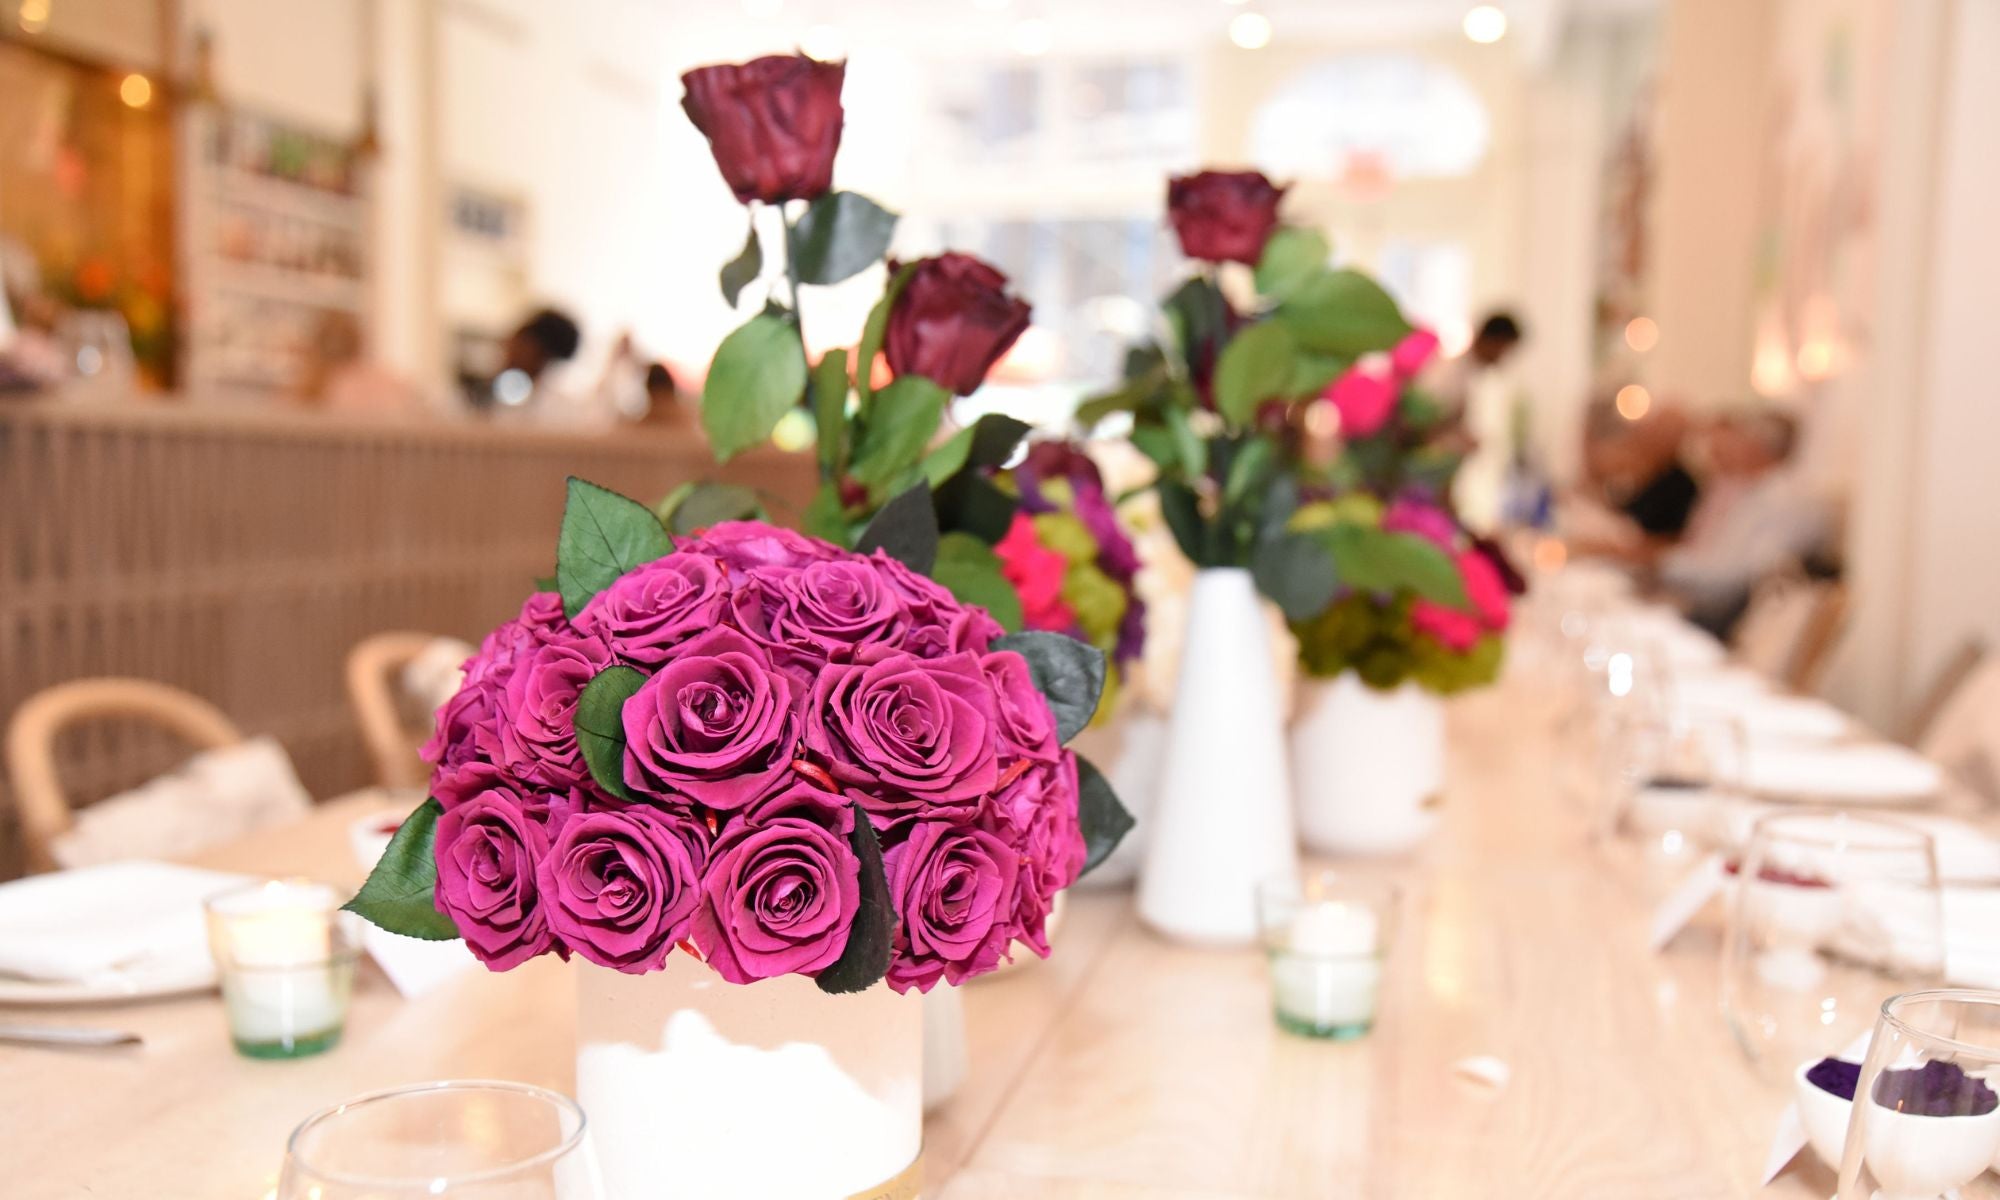 Venus et Fleur Roses Fit For a Wedding Table